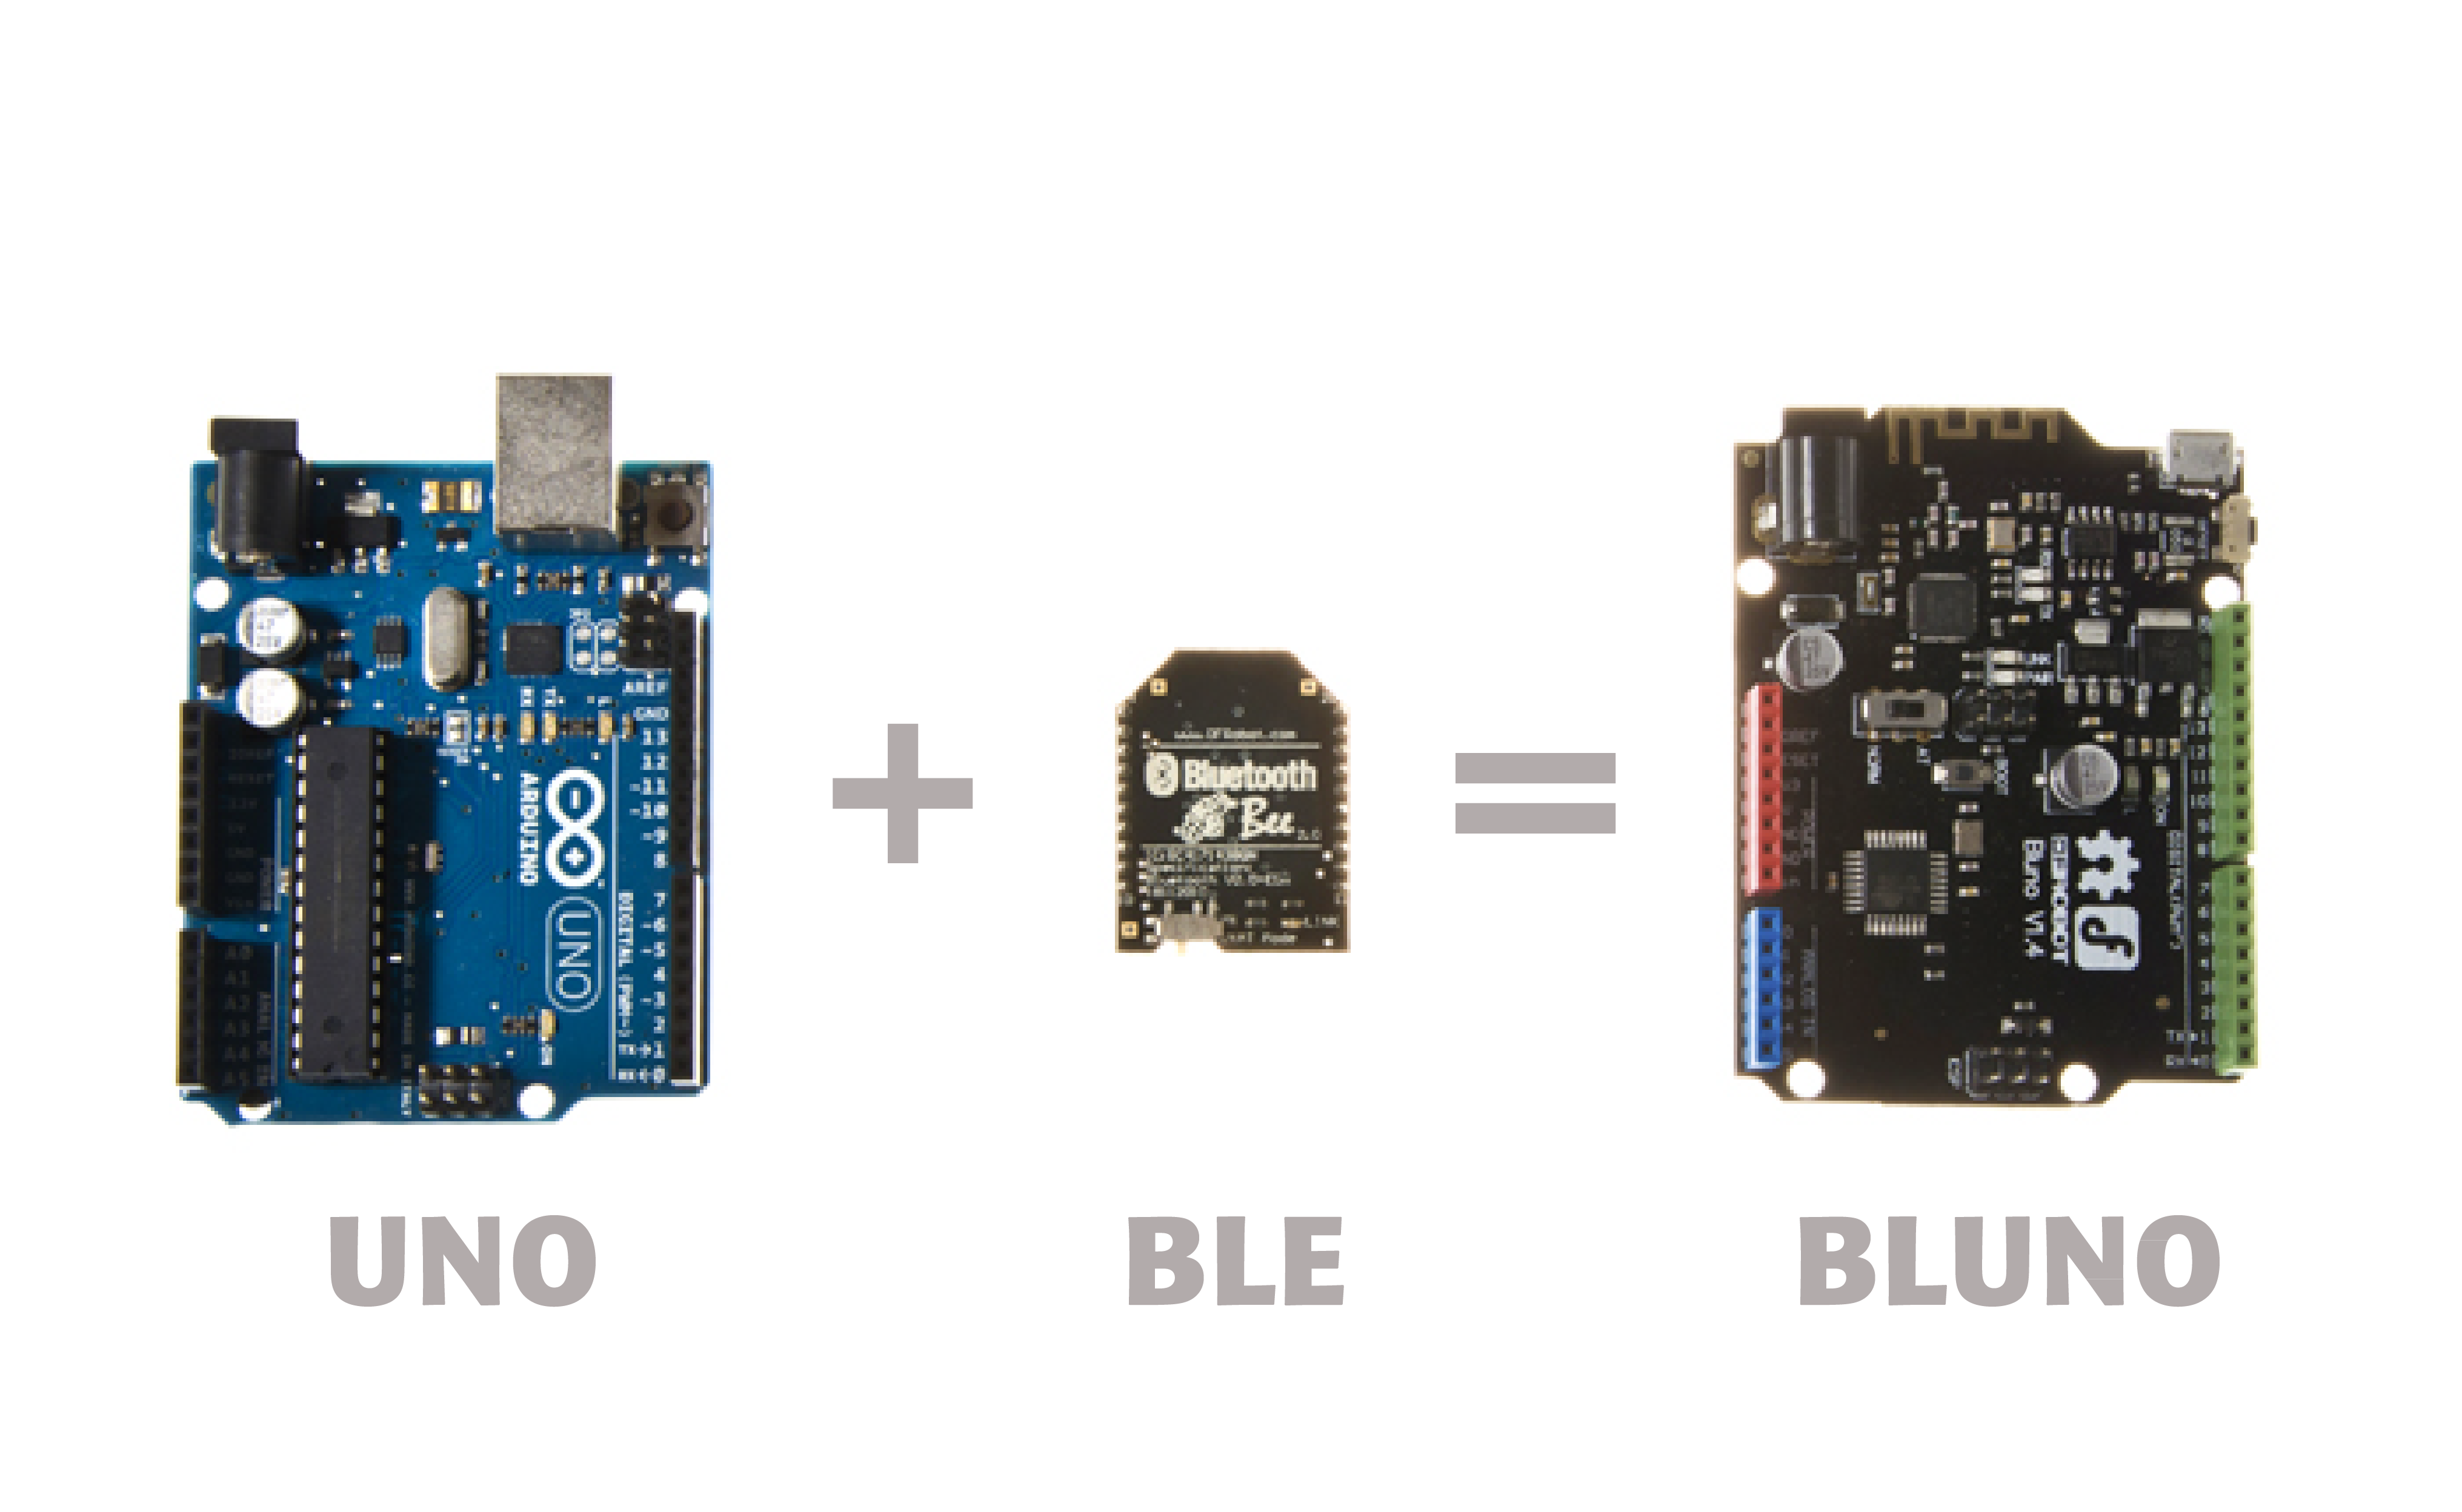 Bluno - BLE with Arduino Uno